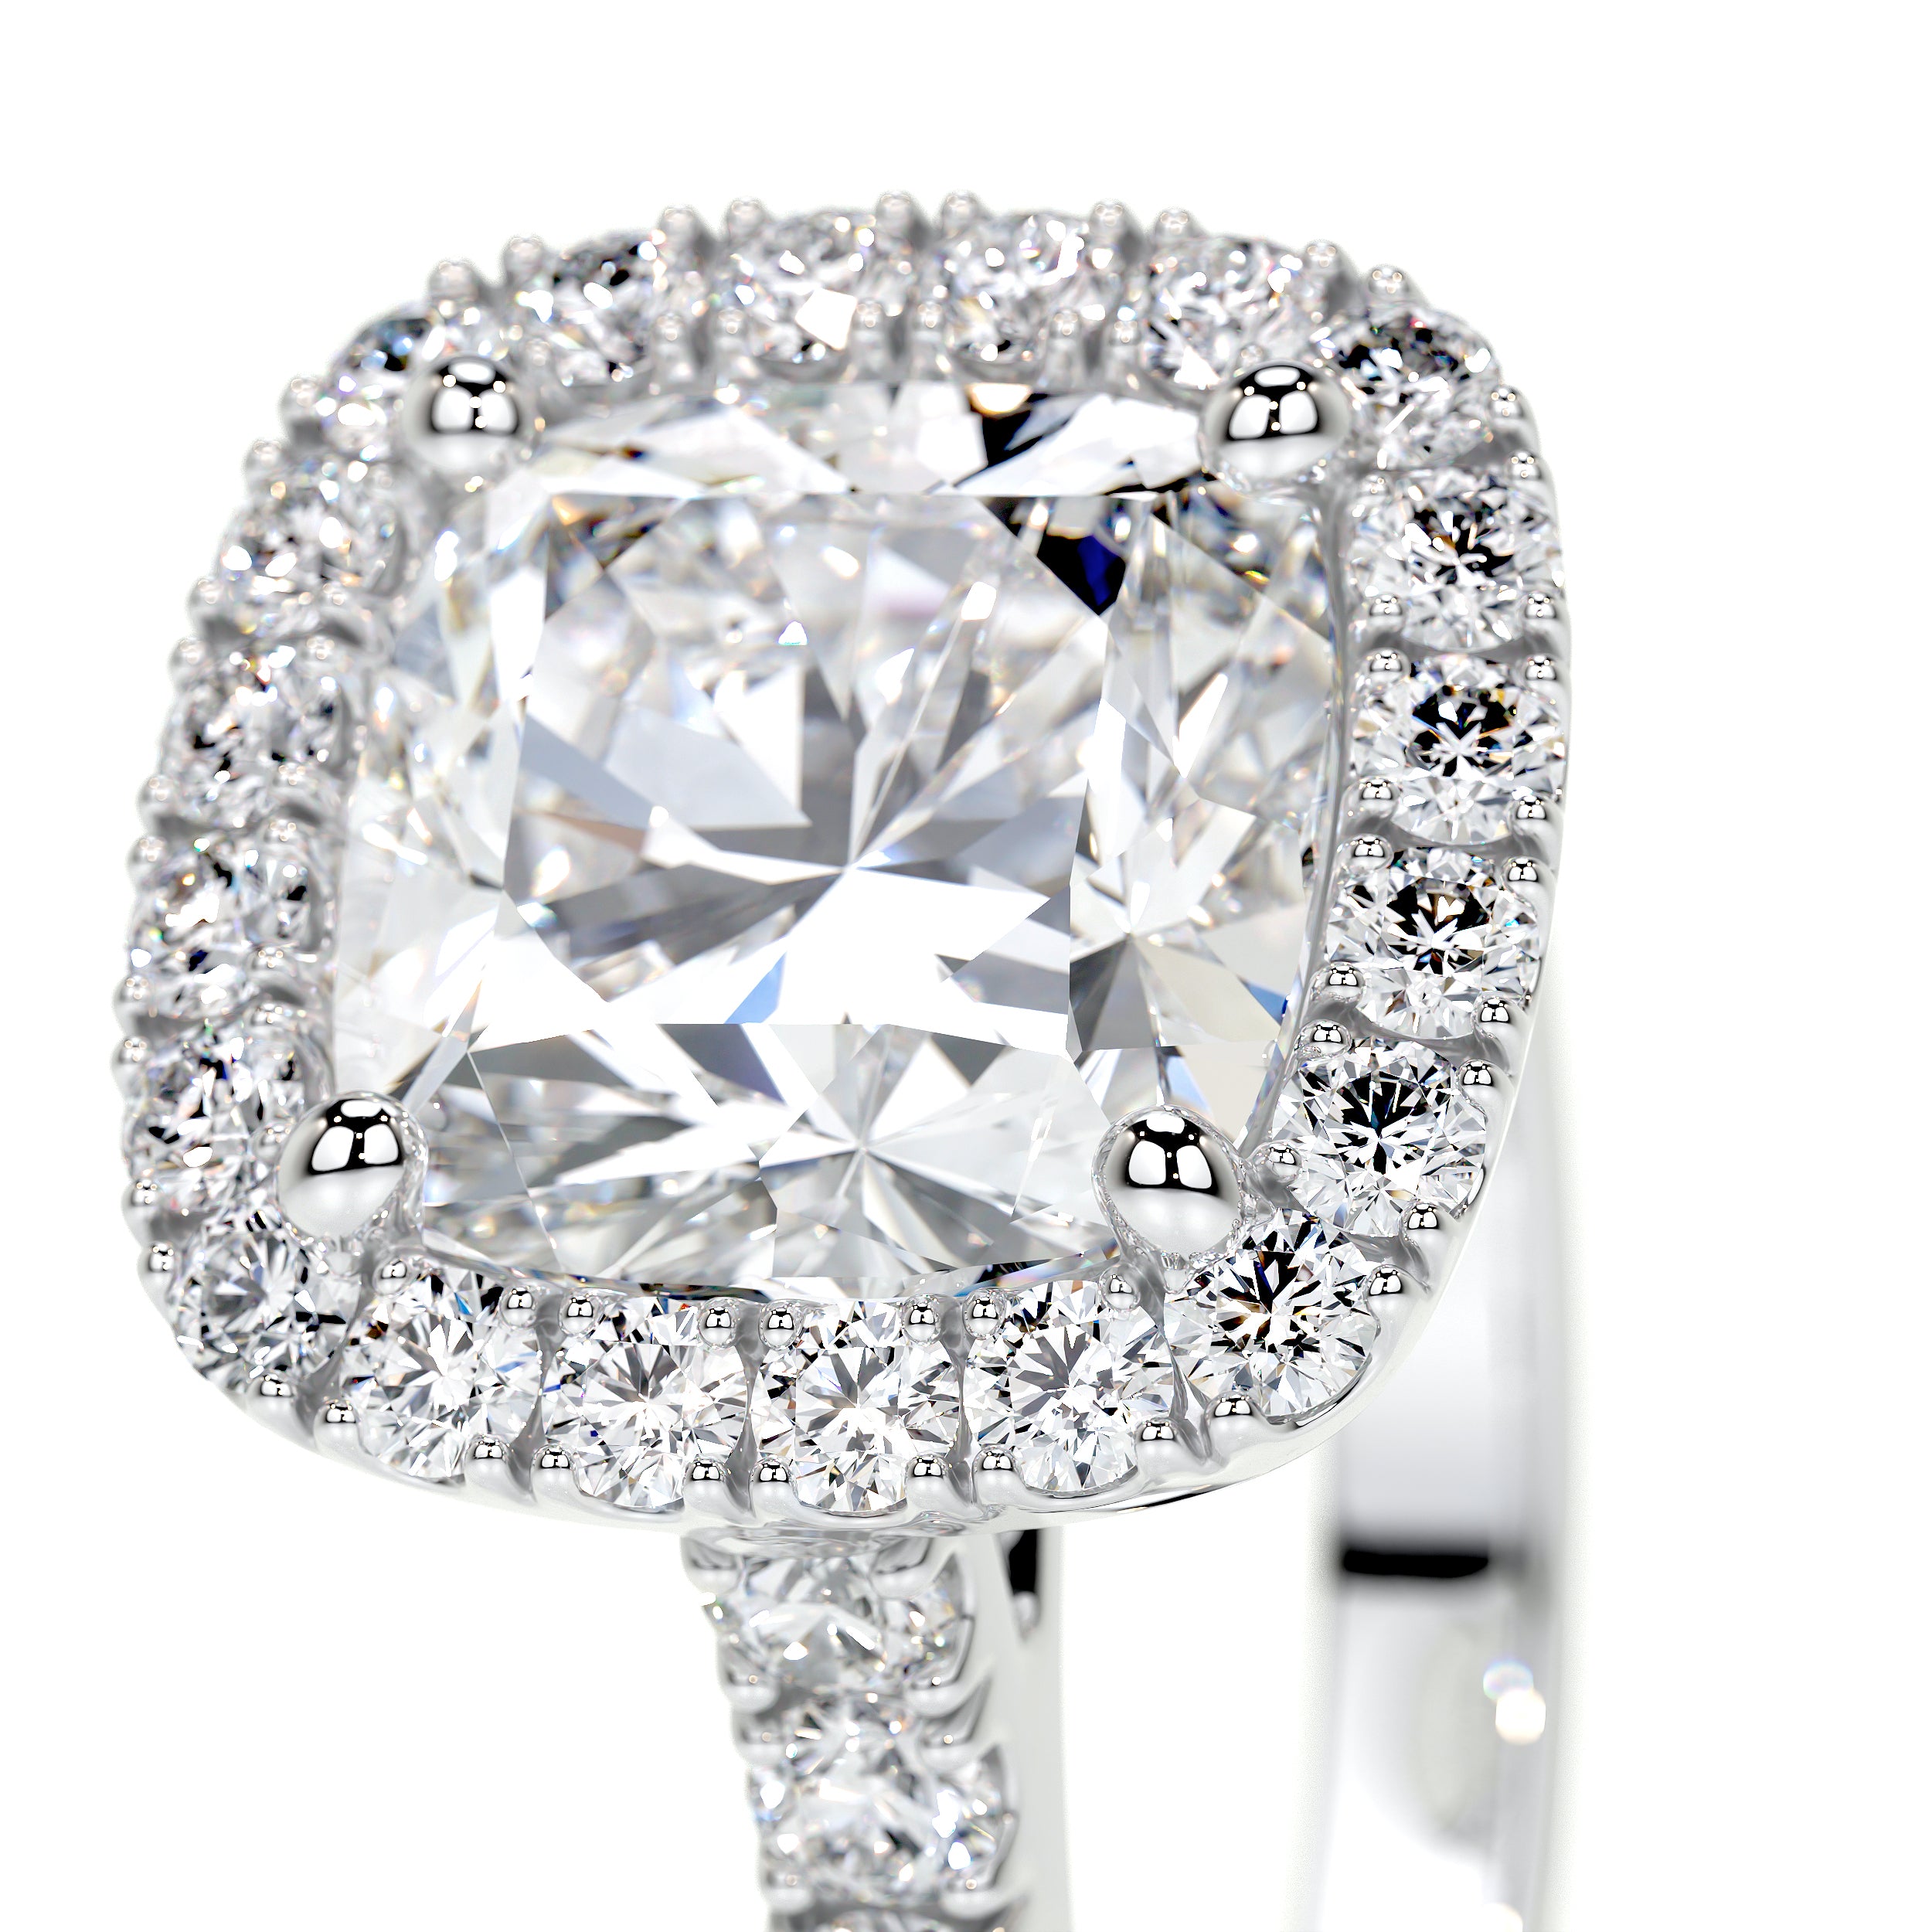 Celeste Lab Grown Diamond Ring -18K White Gold